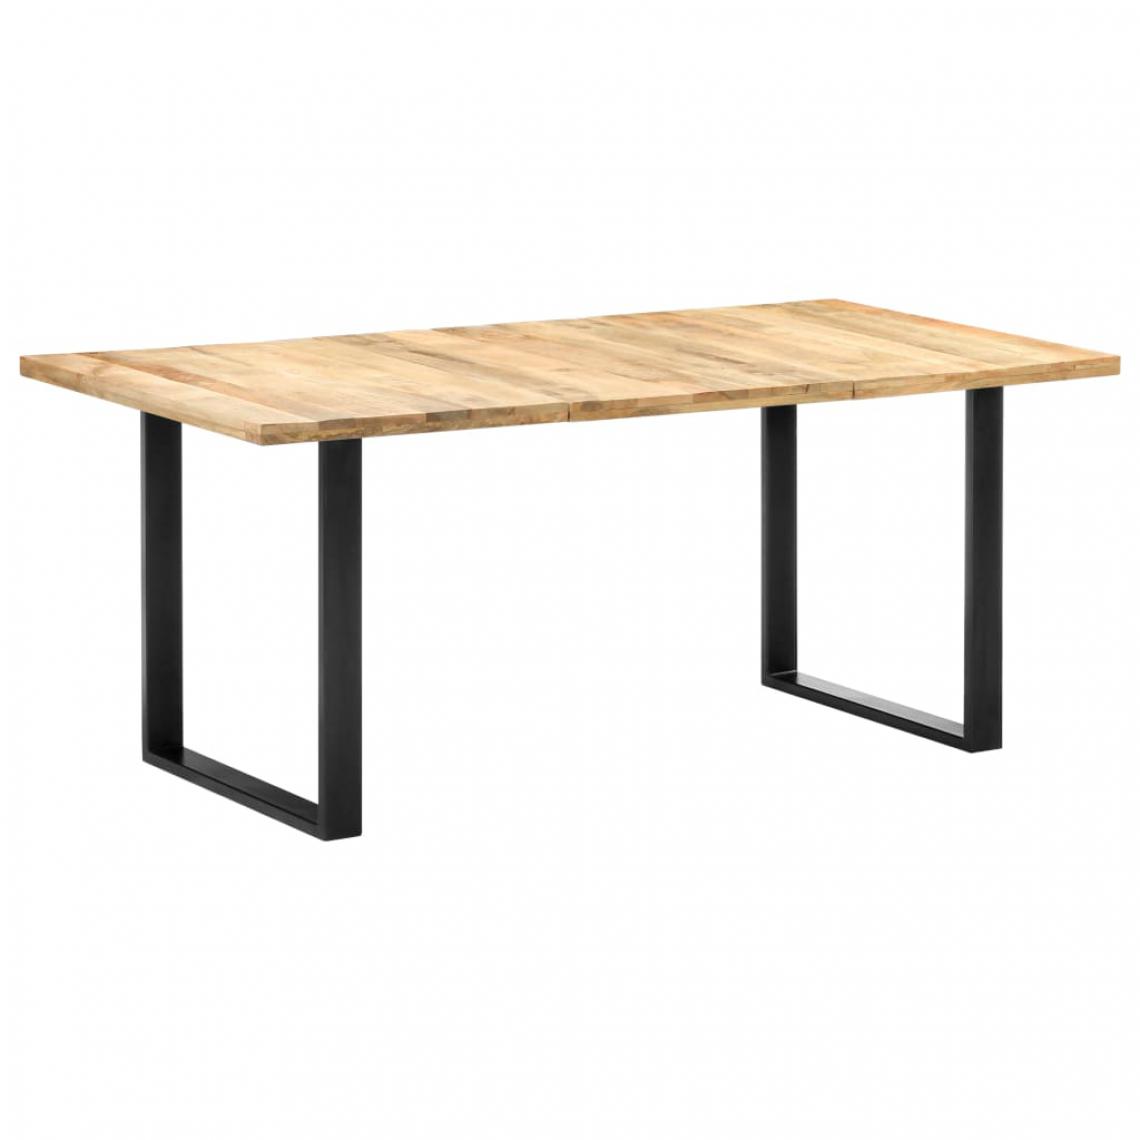 Icaverne - Moderne Tables reference Funafuti Table de salle à manger 180x90x76 cm Bois de manguier massif - Tables à manger